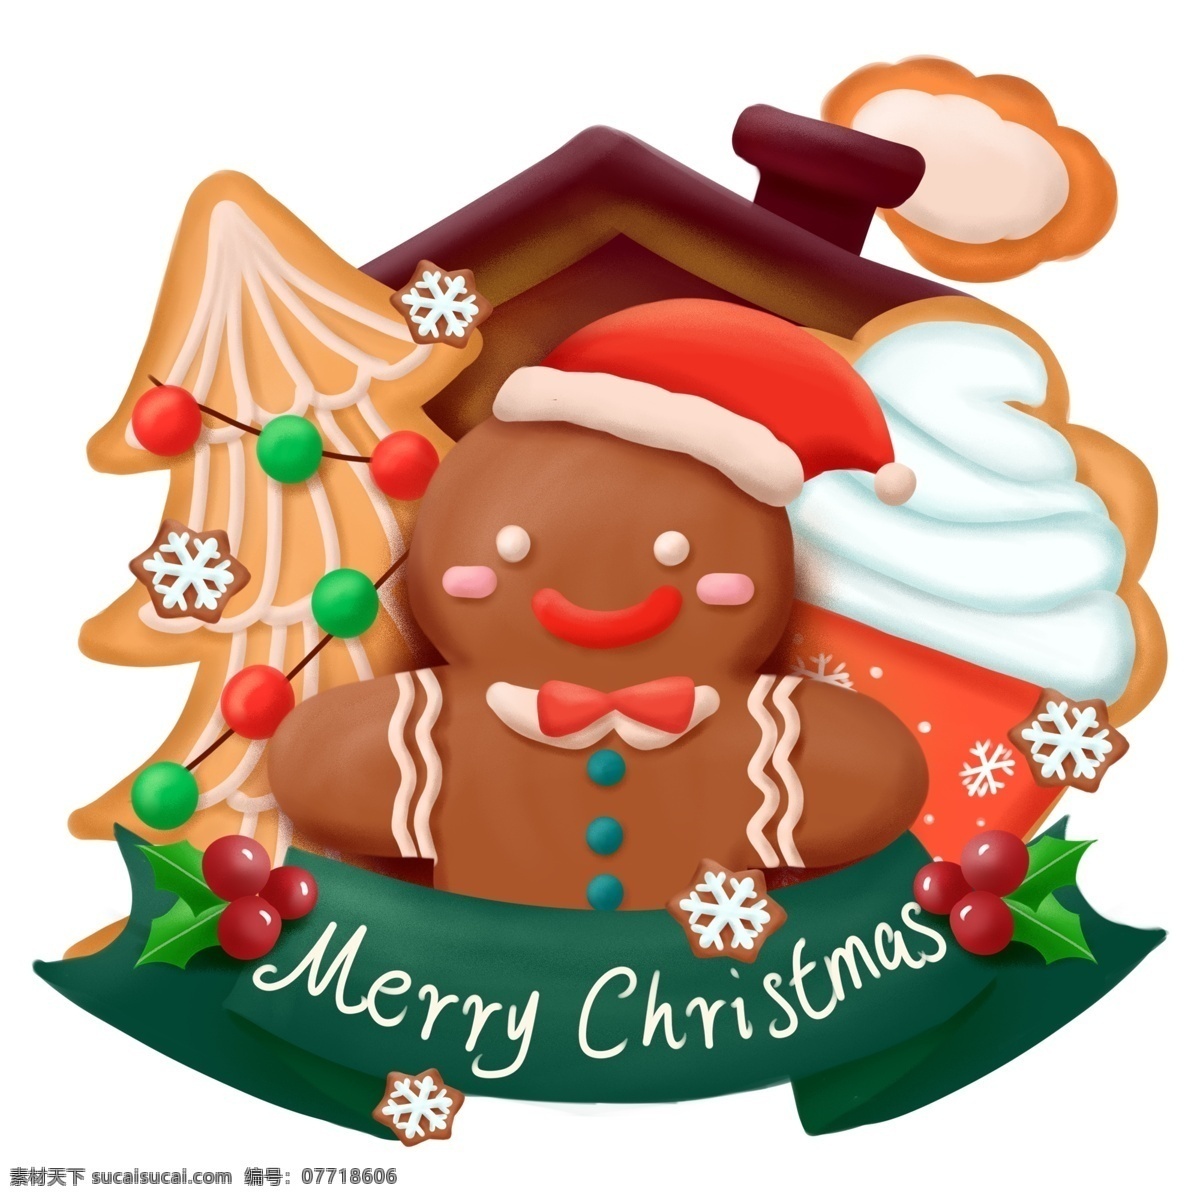 圣诞节 姜饼 人 祝 圣诞快乐 美食 甜点 商用 插画 可爱 圣诞 饼干 姜饼人 手绘 元素 配图